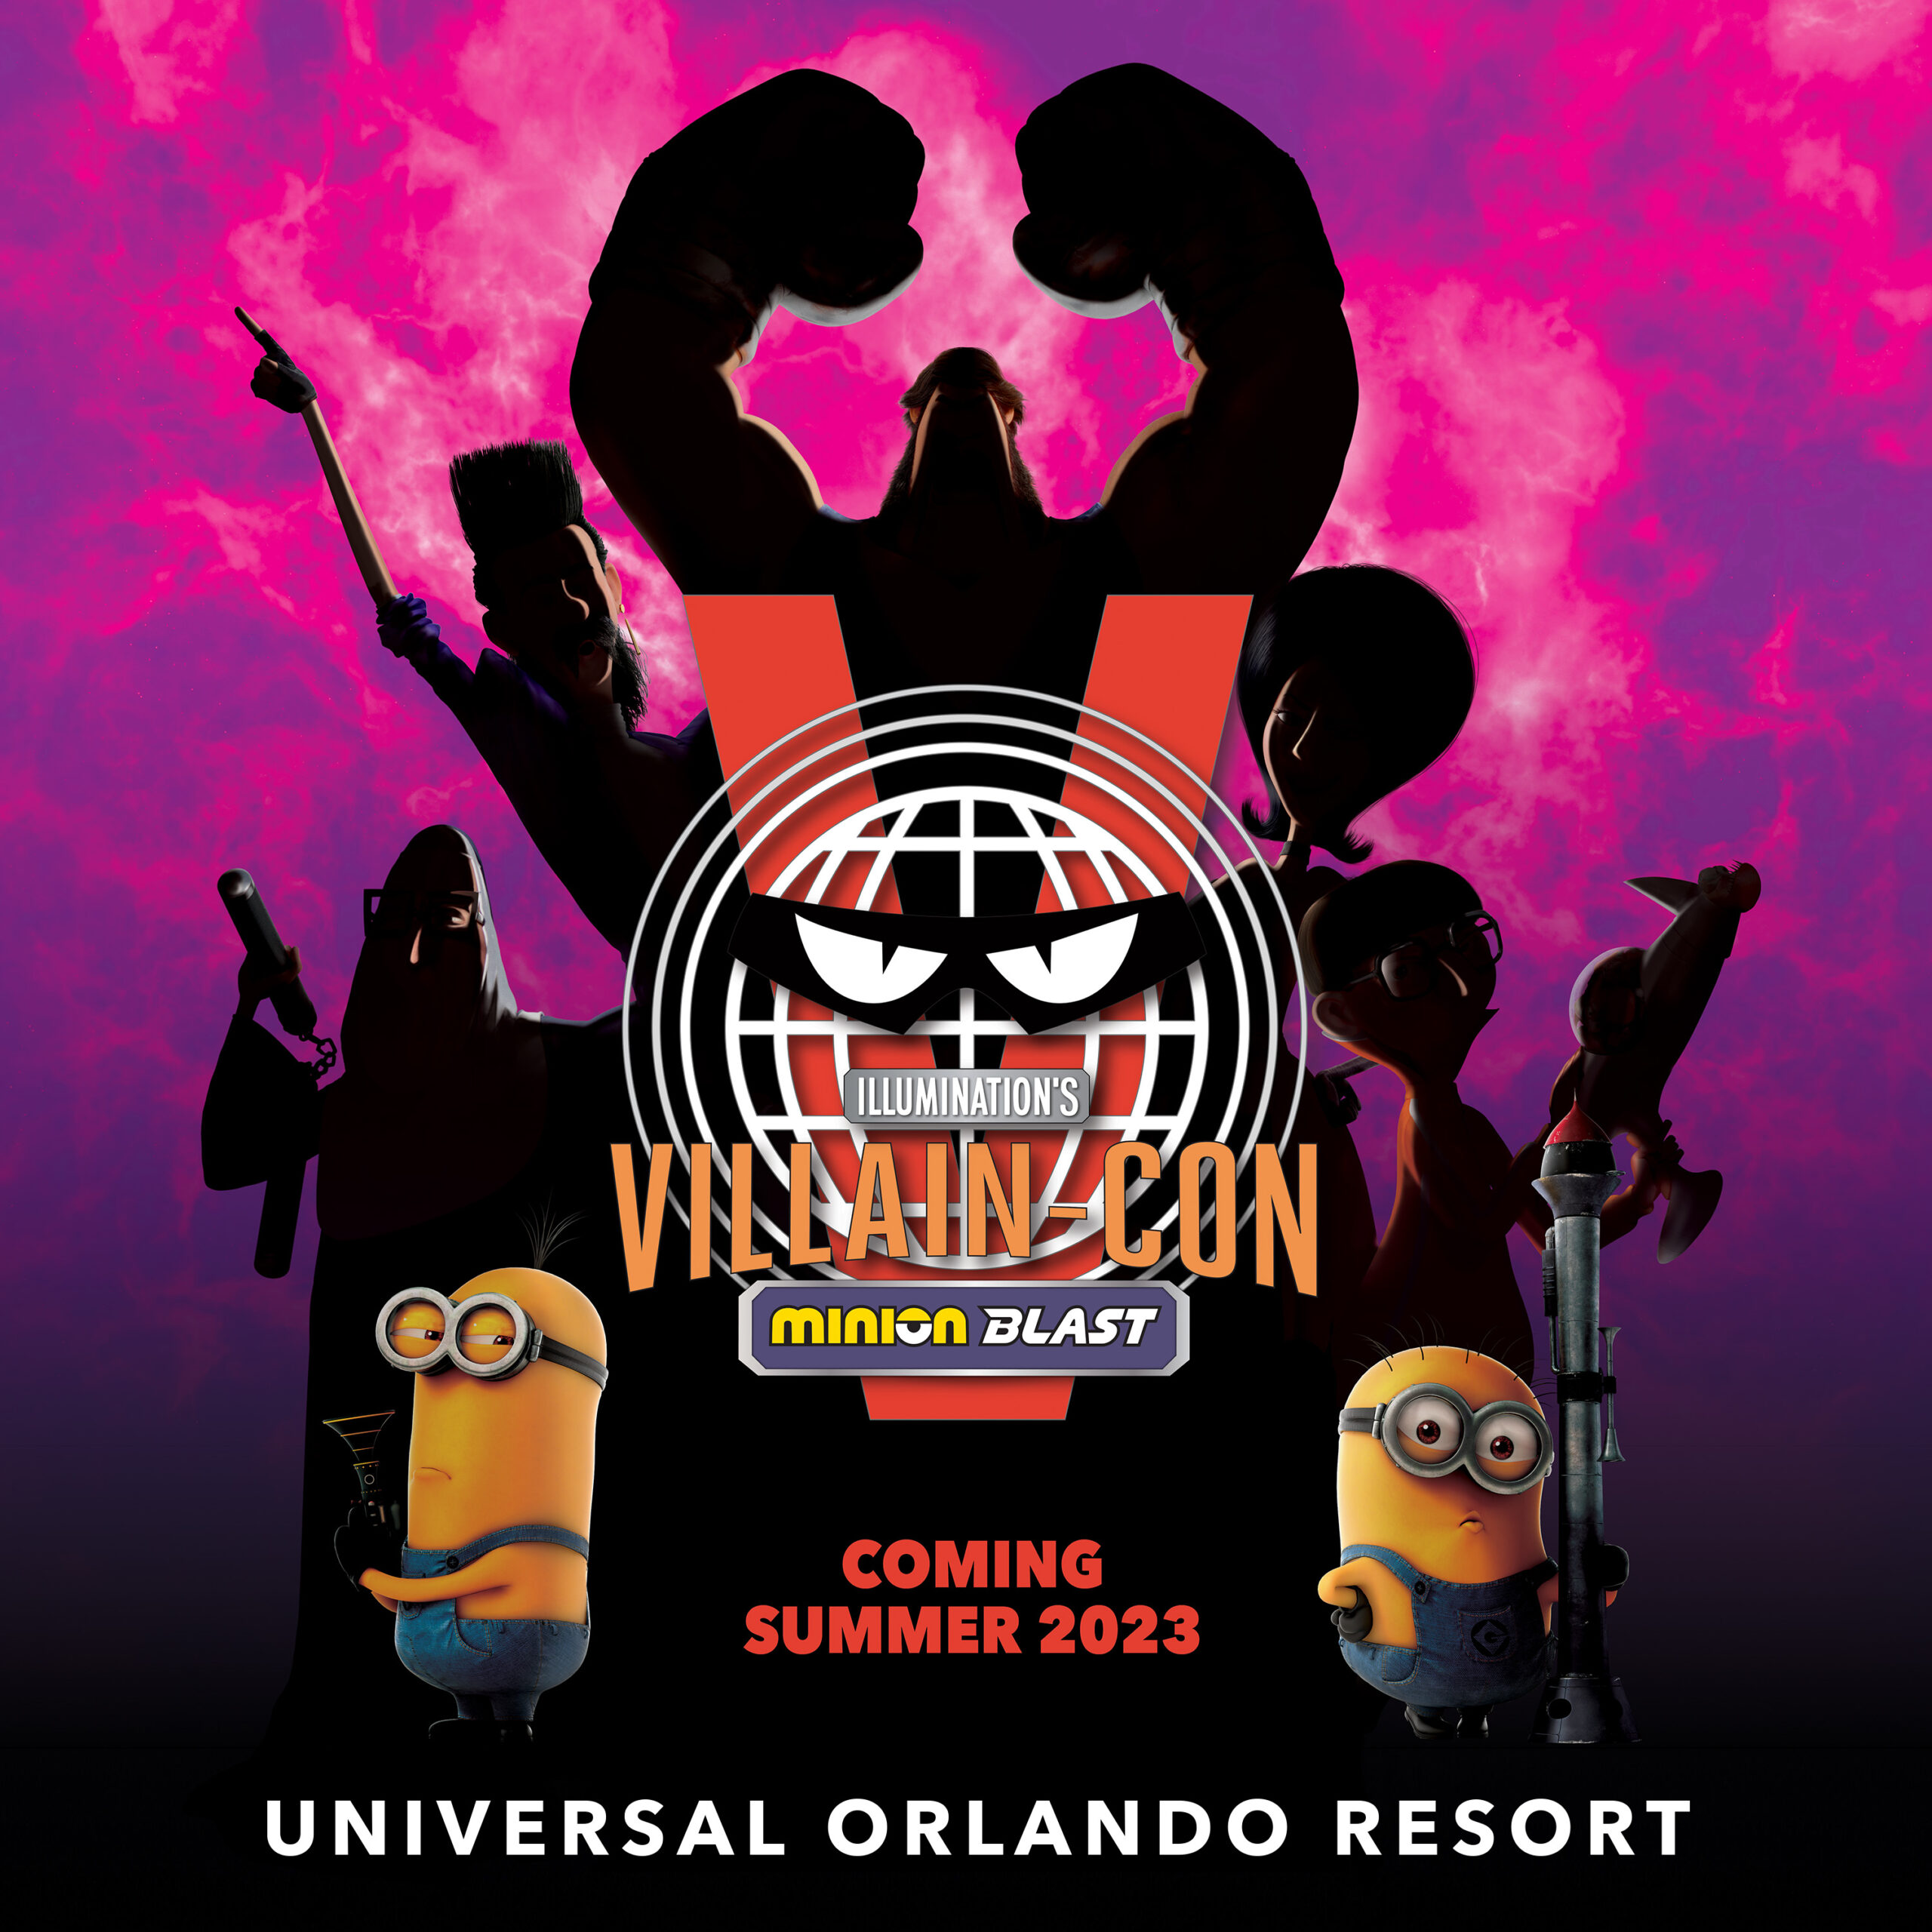 Universal Orlando Resort anuncia nueva atracción Villain-Con Minion Blast para 2023